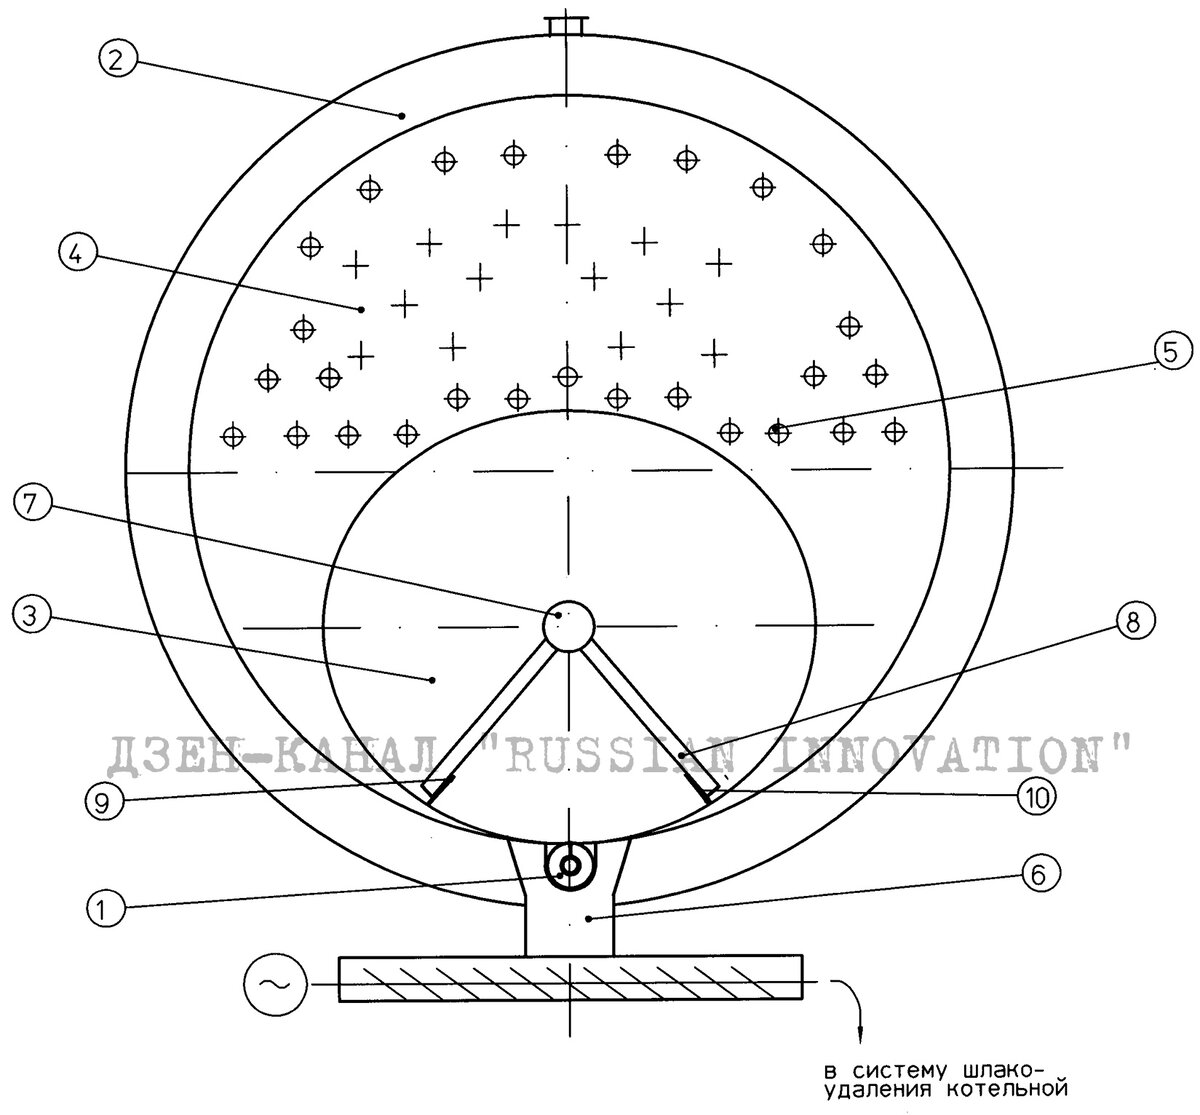 Оригинальный отопительный котел придумал житель Москвы и получил патент на изобретение